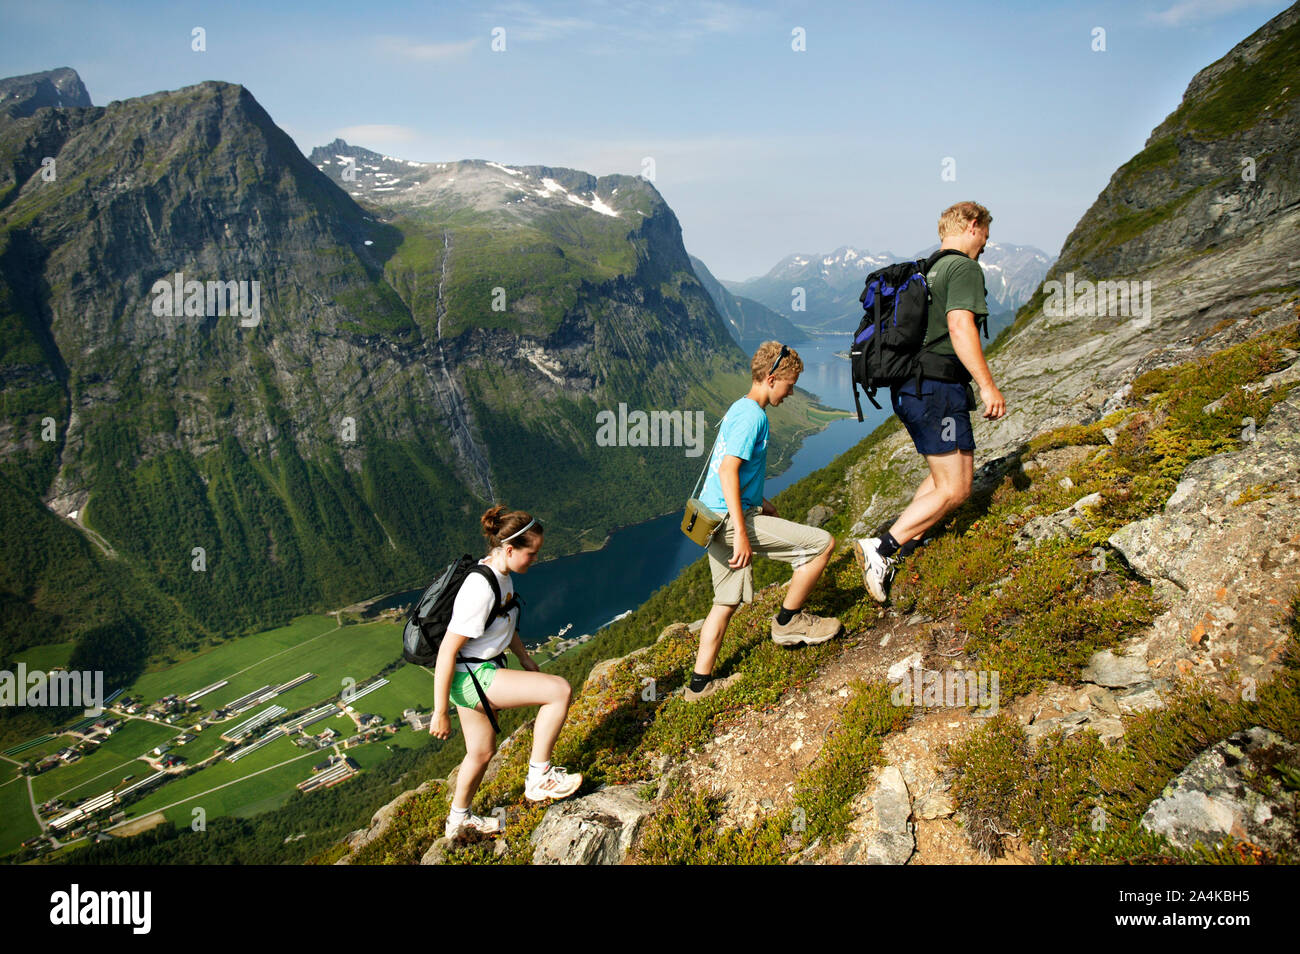 Climbing Slogen in western part of Norway Stock Photo